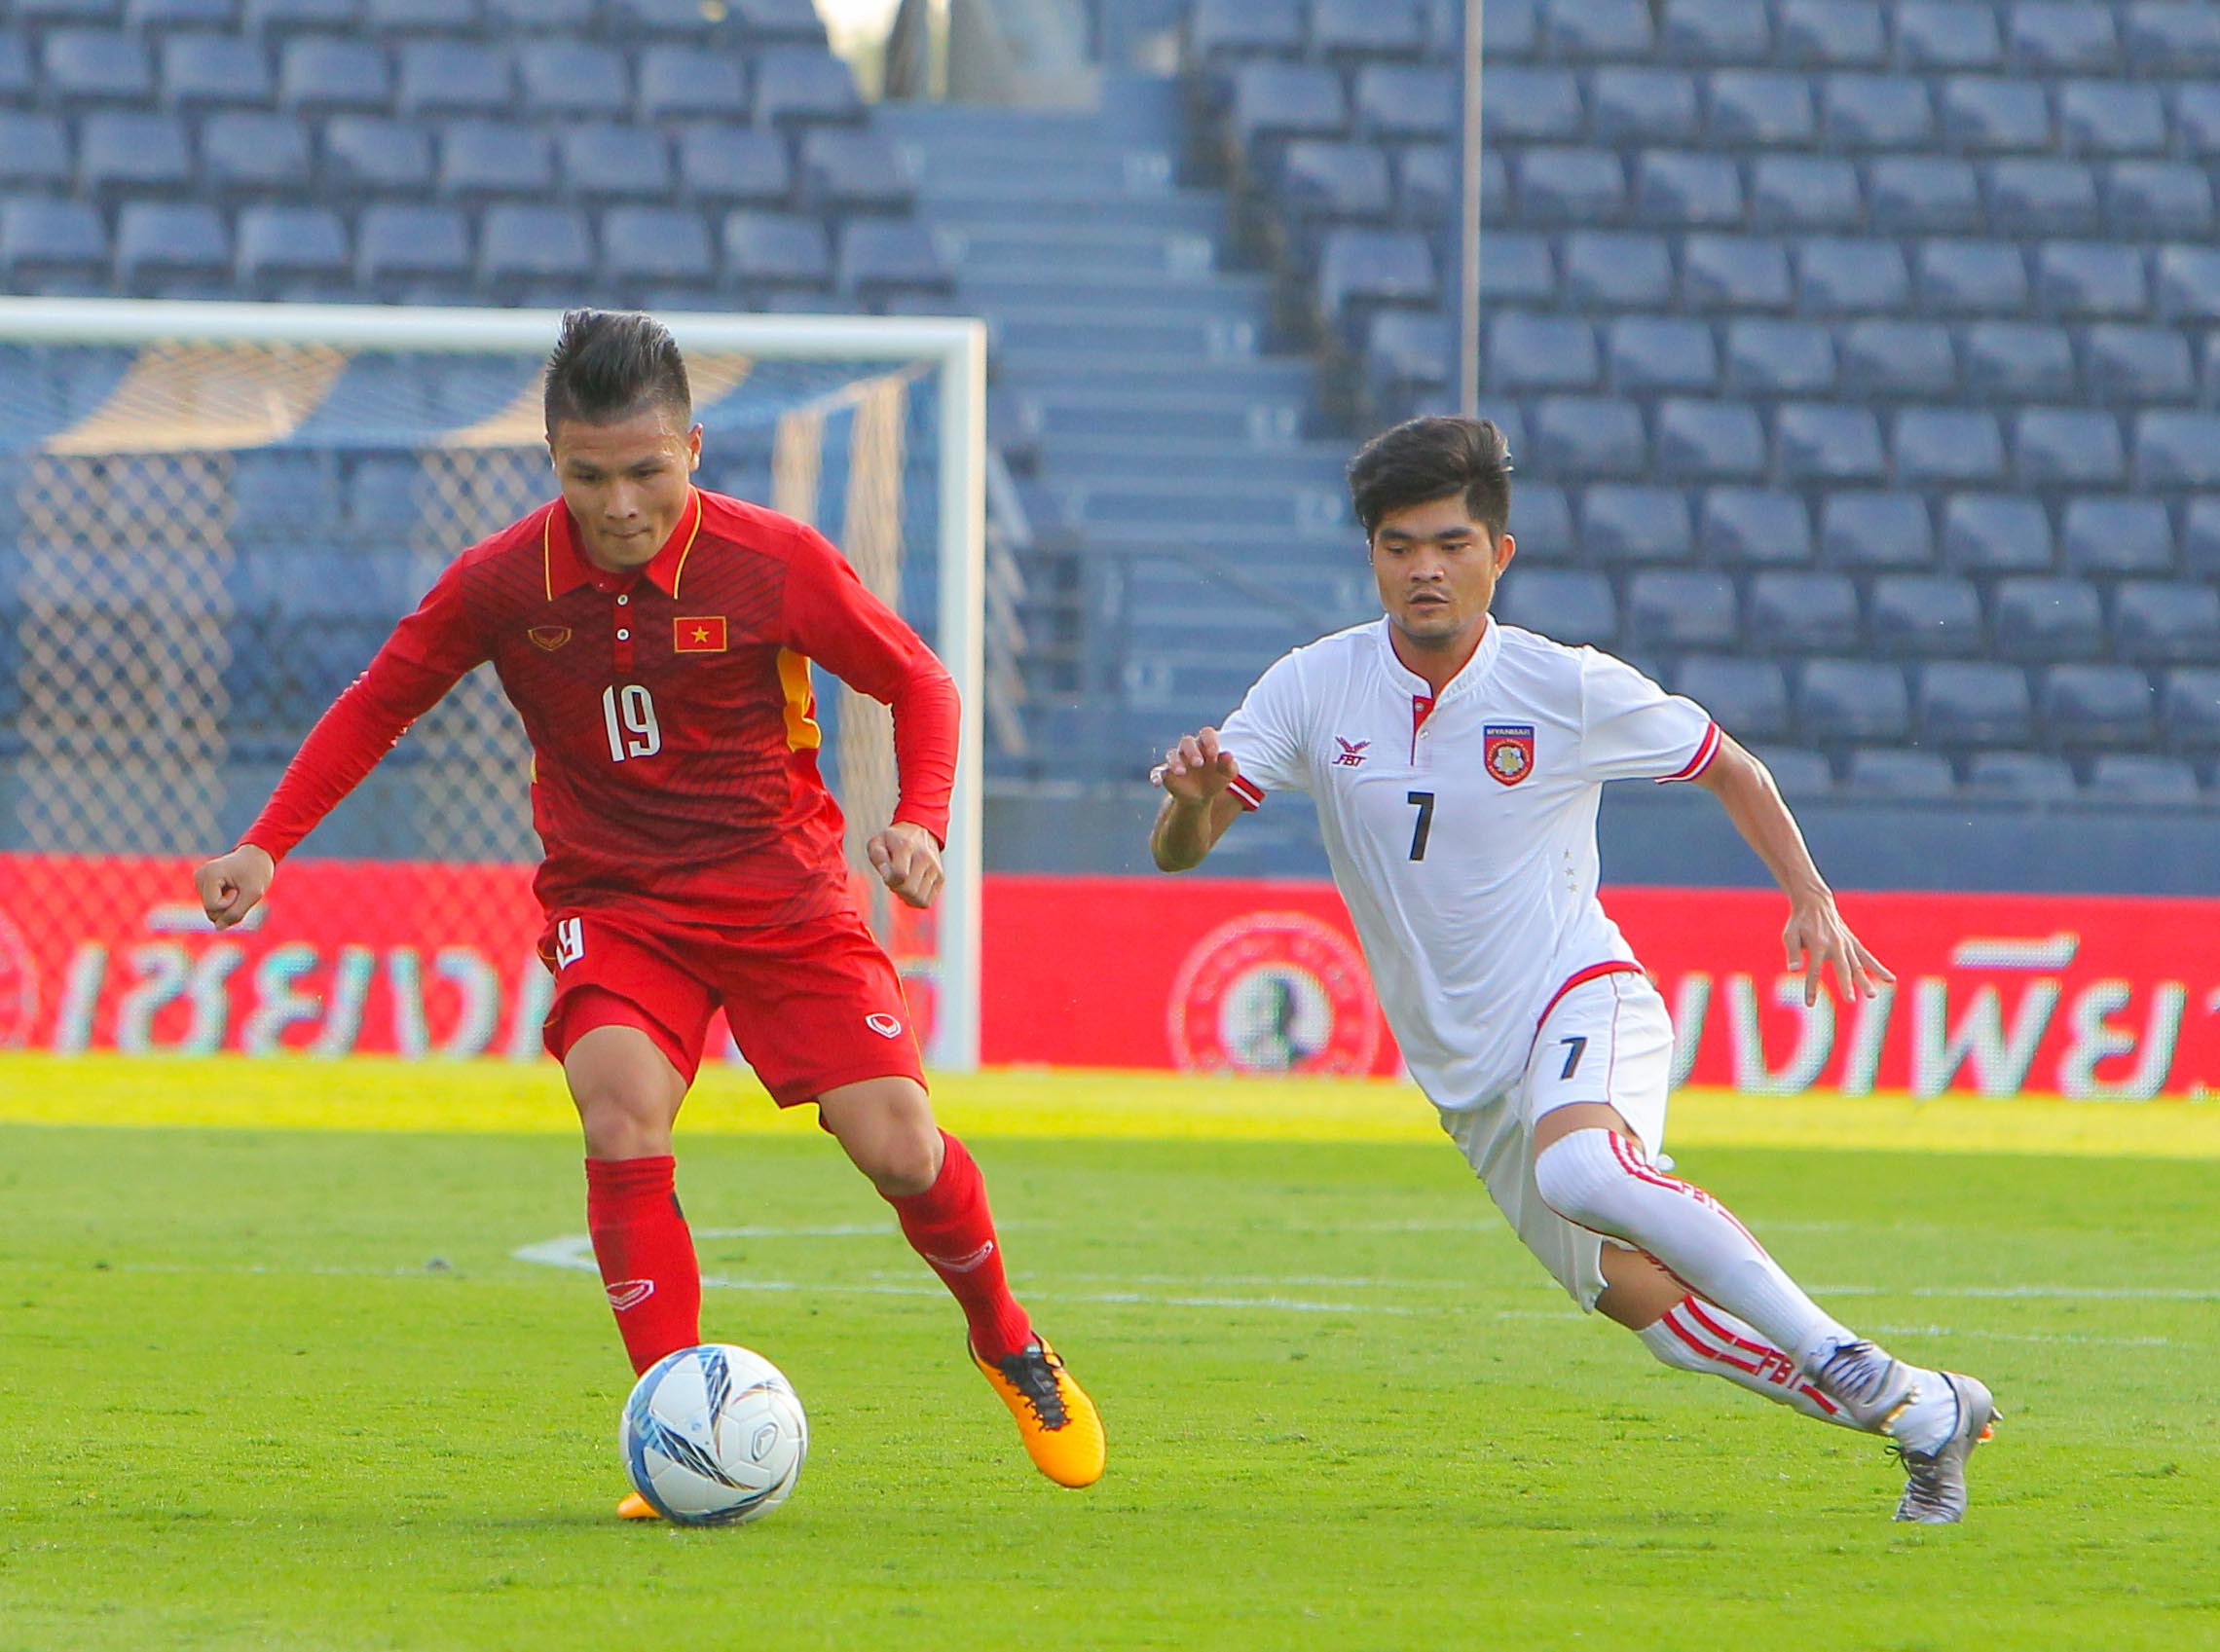 Chùm Ảnh Công Phượng, Quang Hải Hủy Diệt U23 Myanmar 4-0 | Bóng Đá